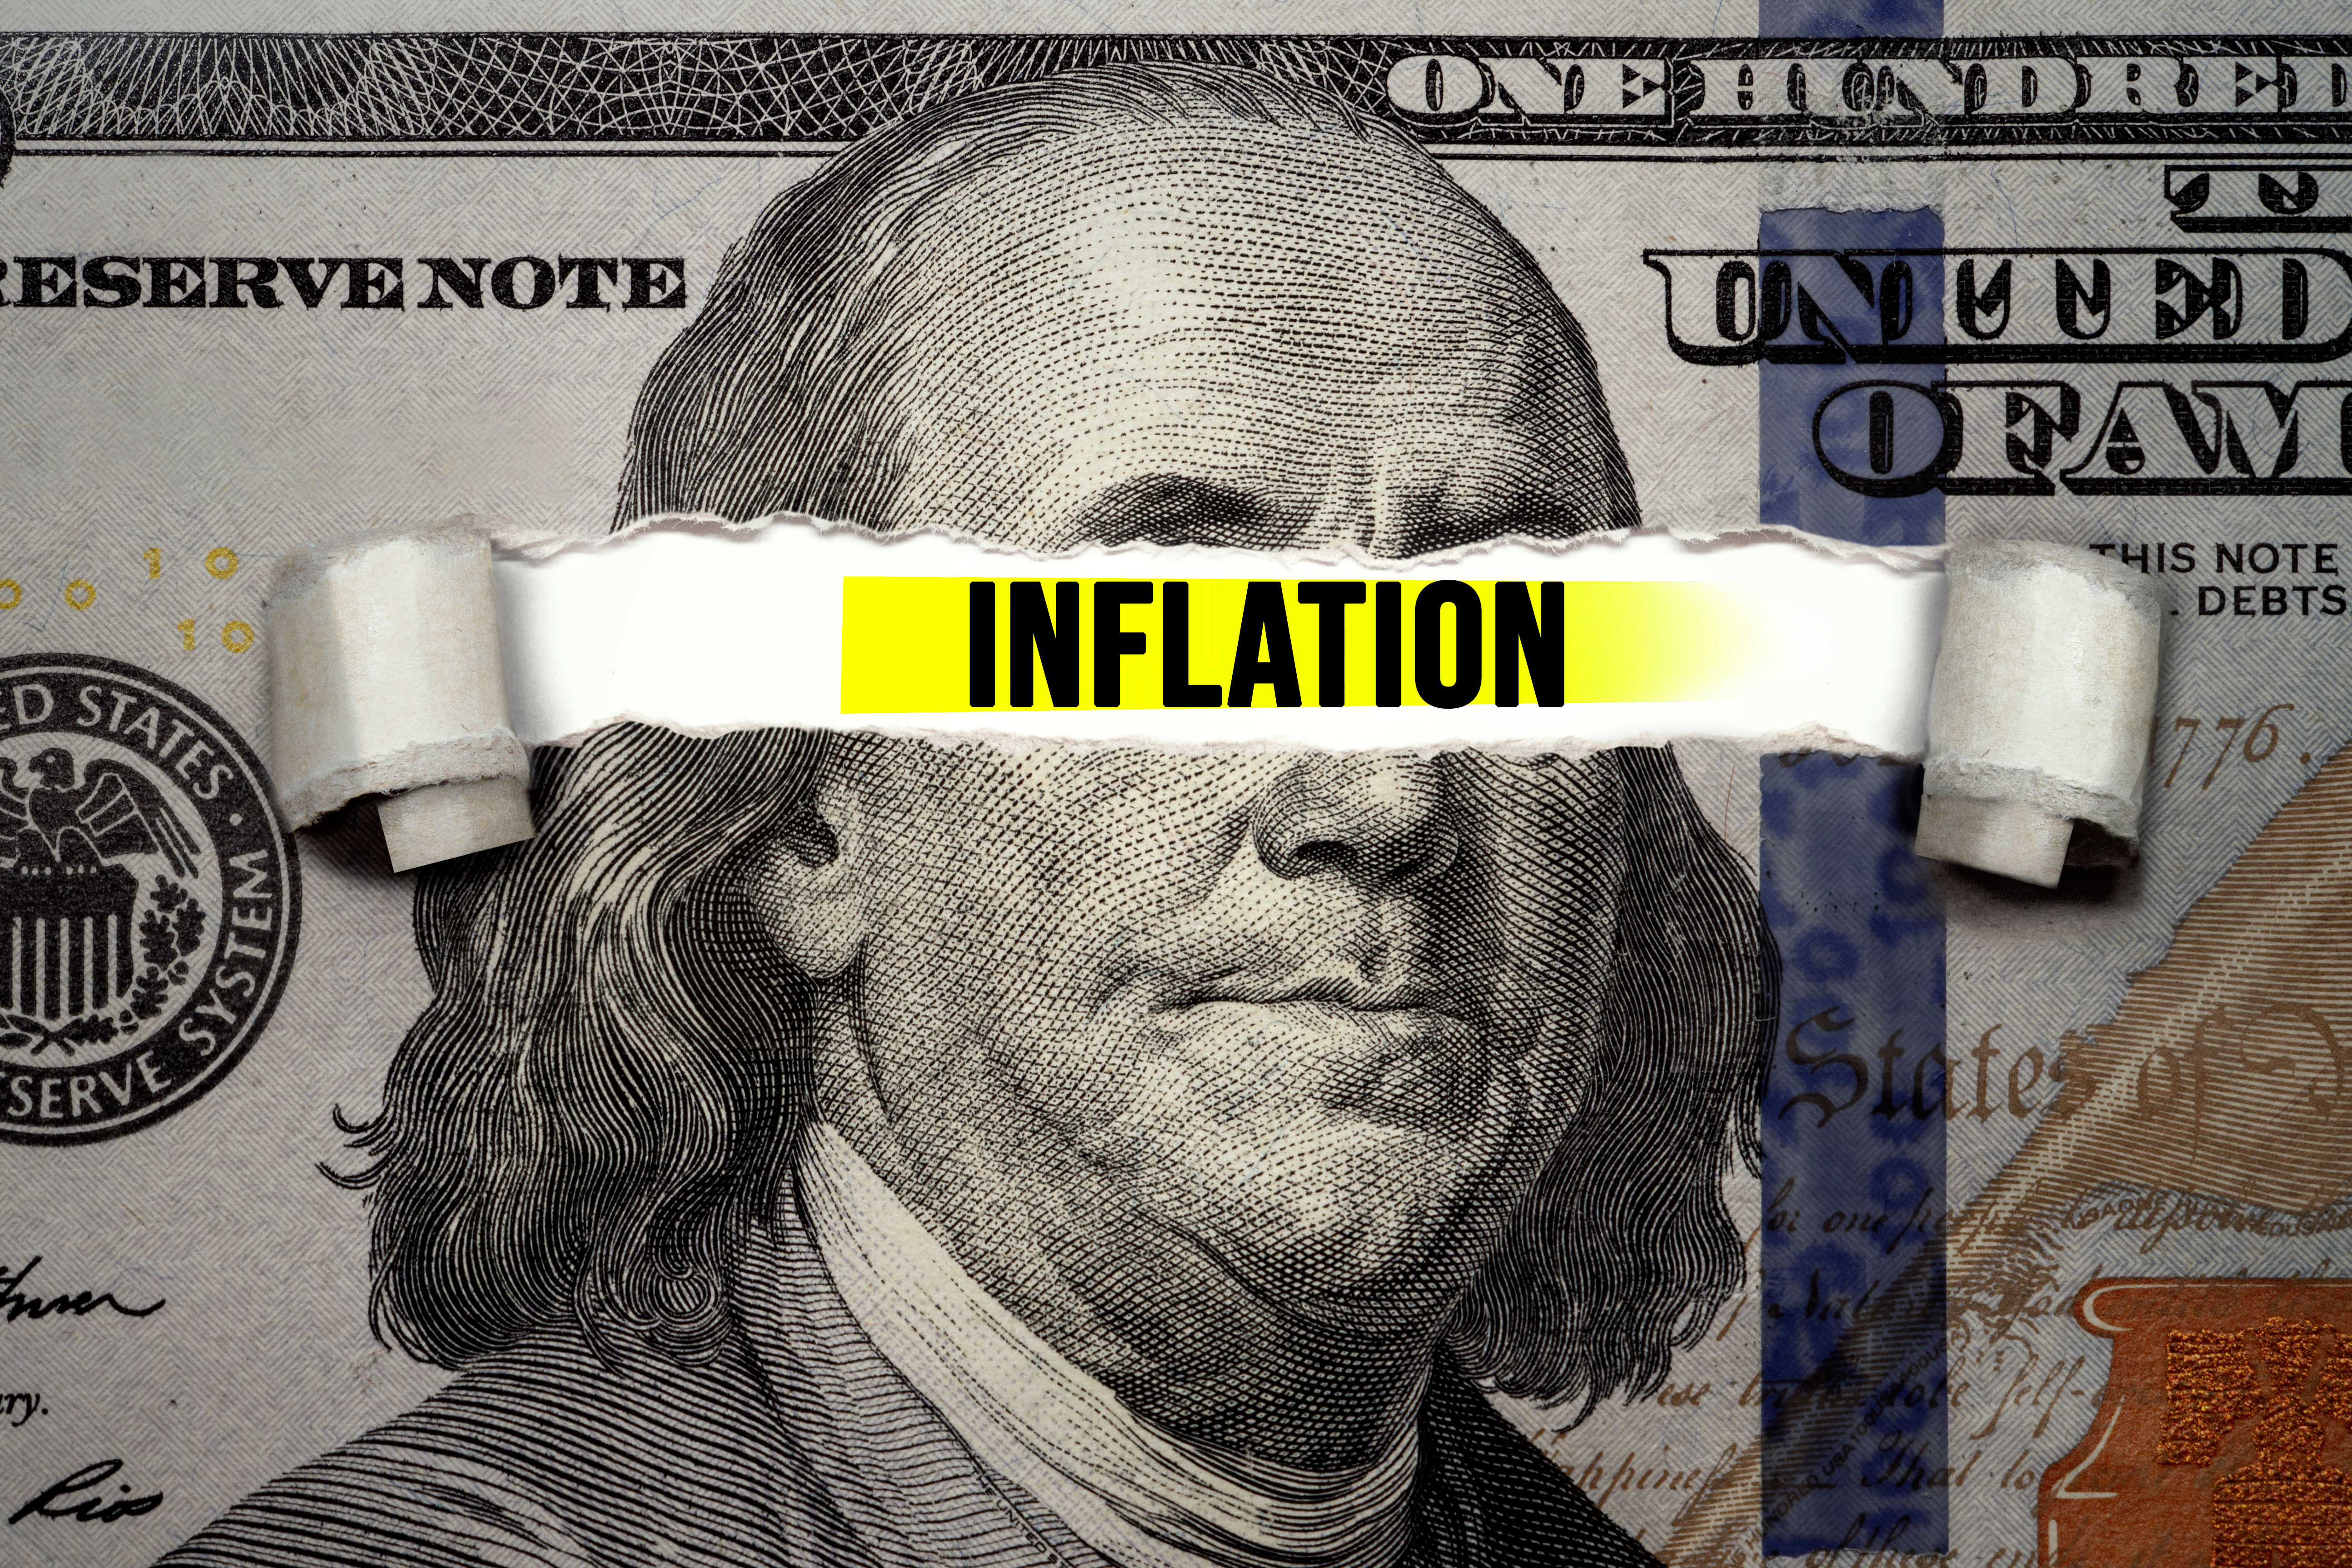 Biden’s “Zero Percent Inflation” Lie